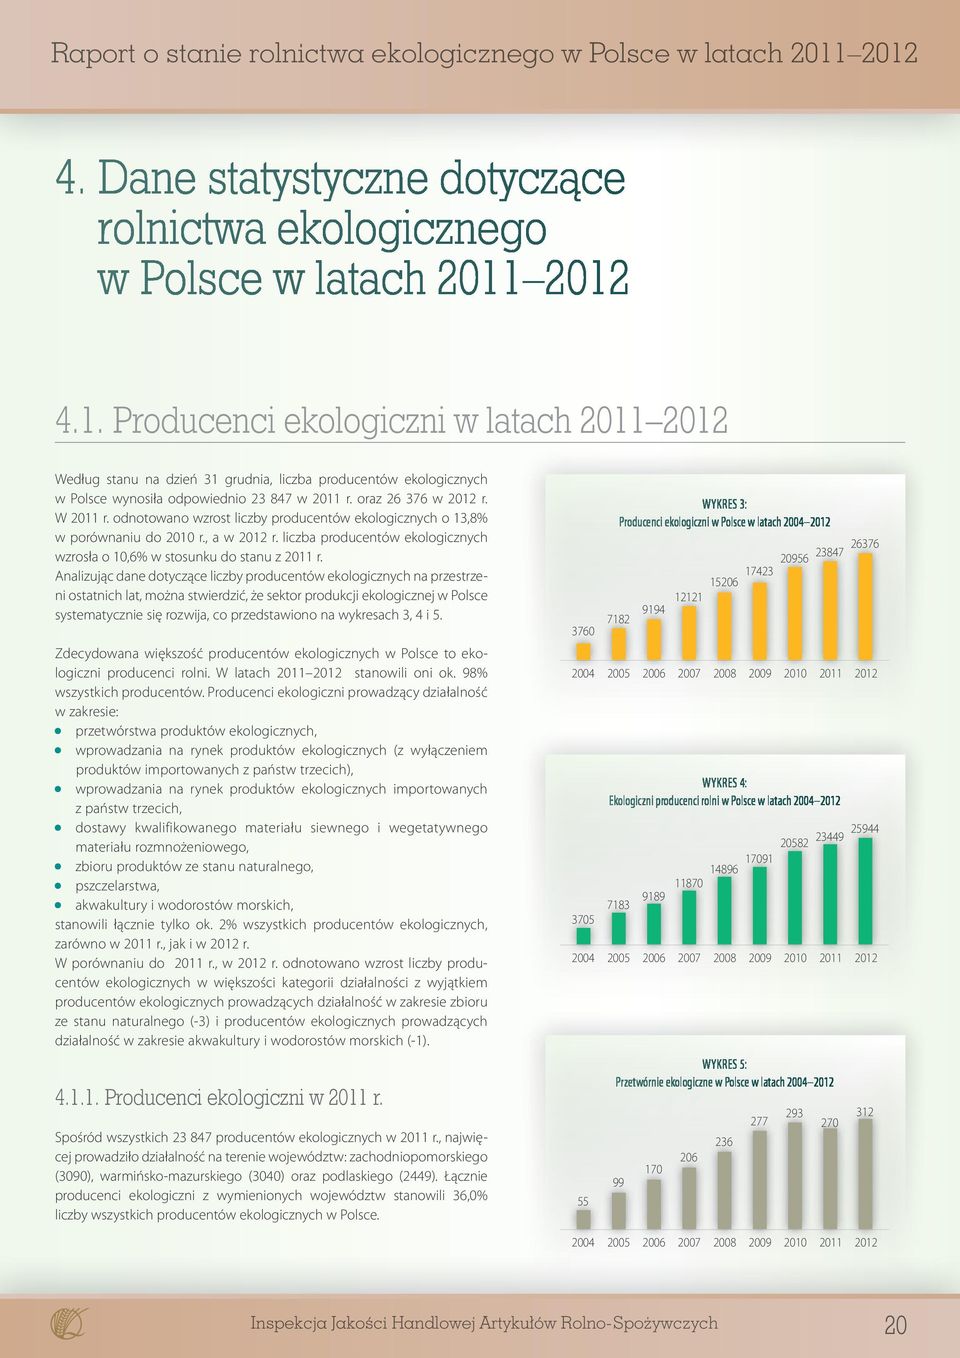 odnotowano wzrost liczby producentów ekologicznych o 13,8% w porównaniu do 2010 r., a w 2012 r. liczba producentów ekologicznych wzrosła o 10,6% w stosunku do stanu z 2011 r.